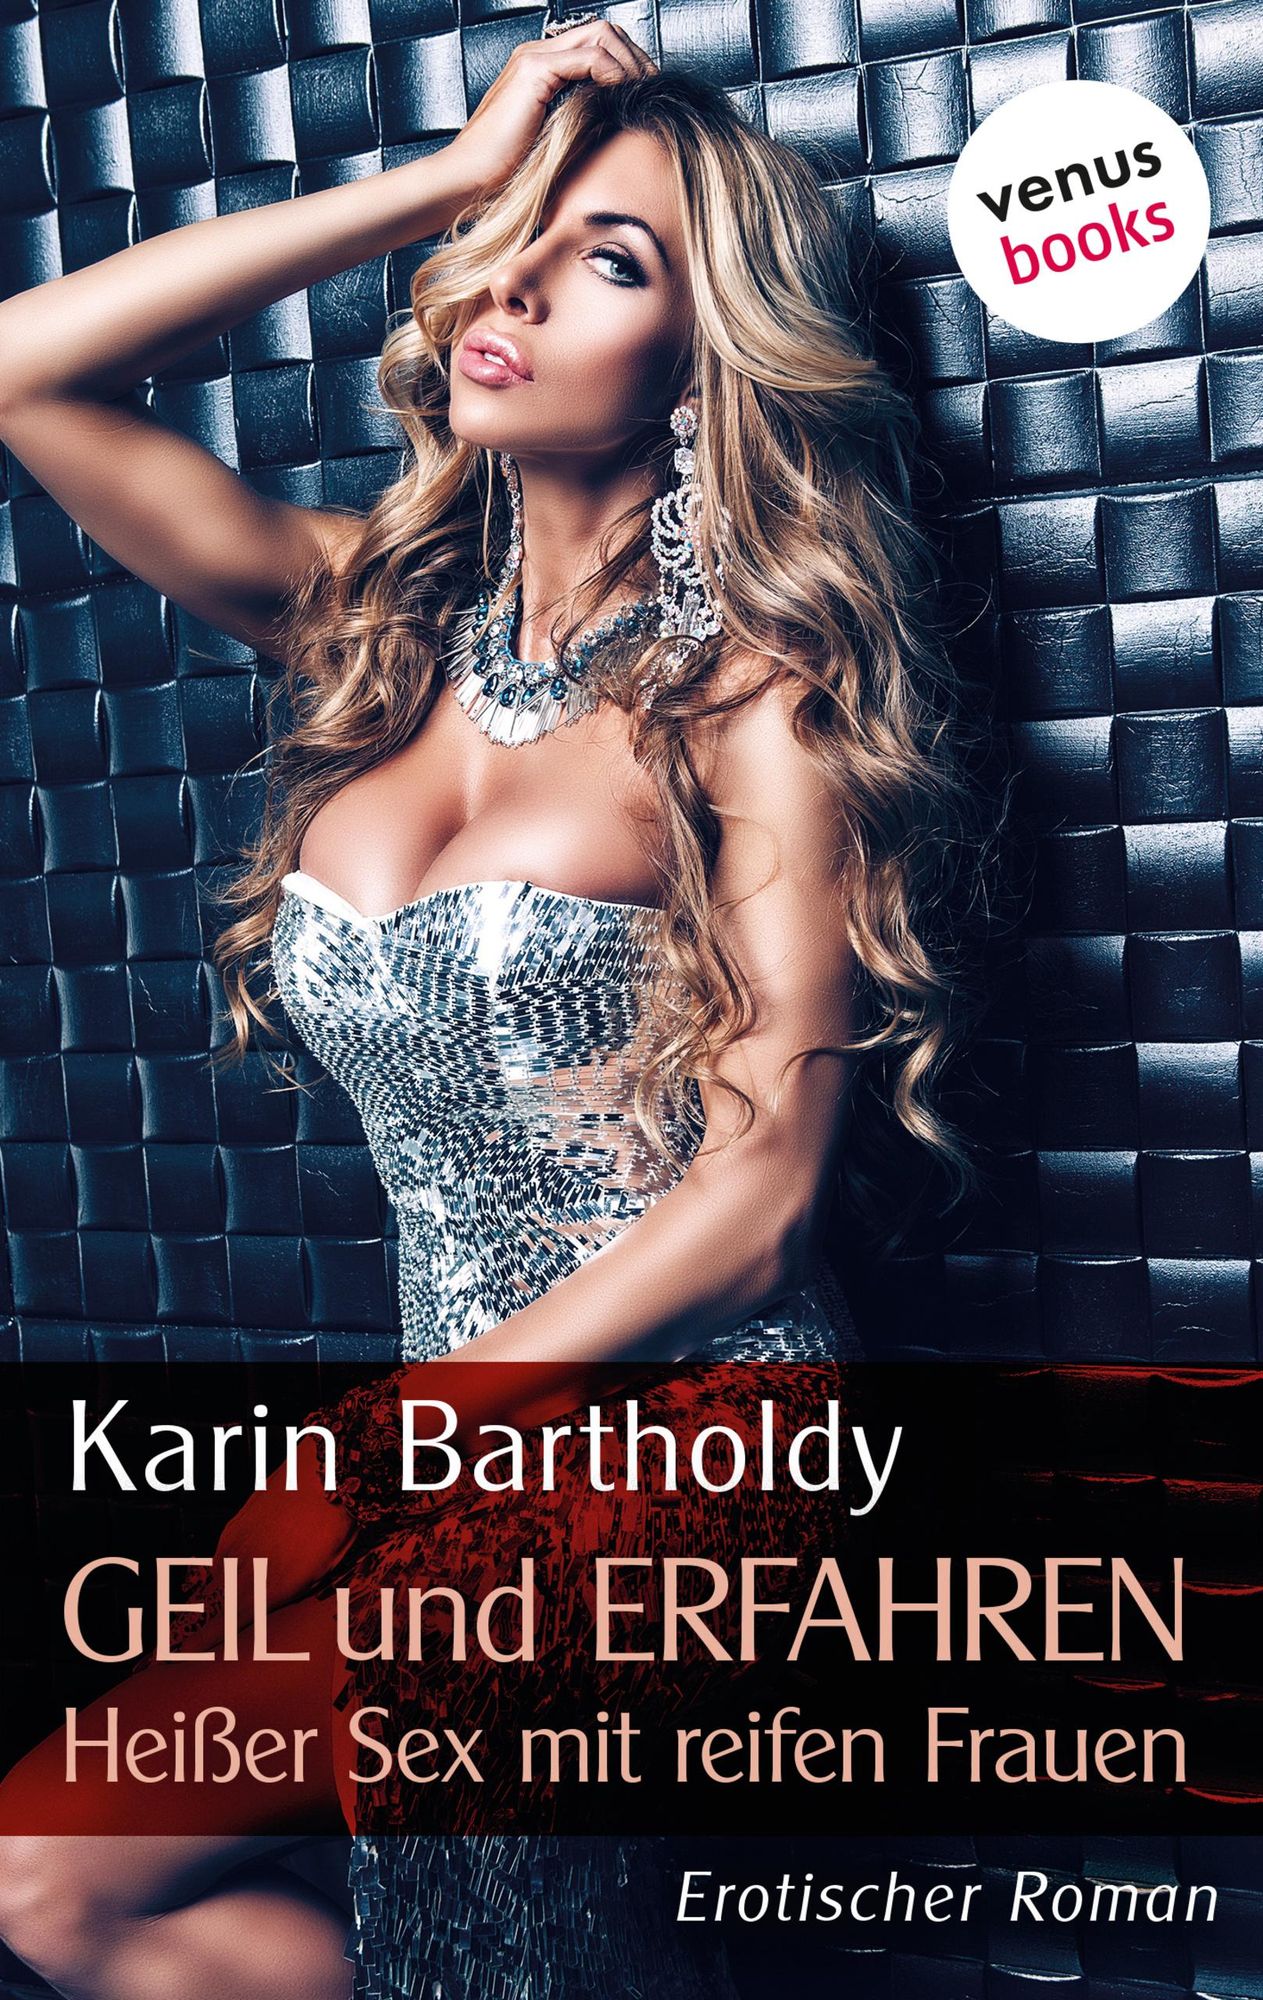 Geil und erfahren - Heißer Sex mit reifen Frauen von Karin Bartholdy